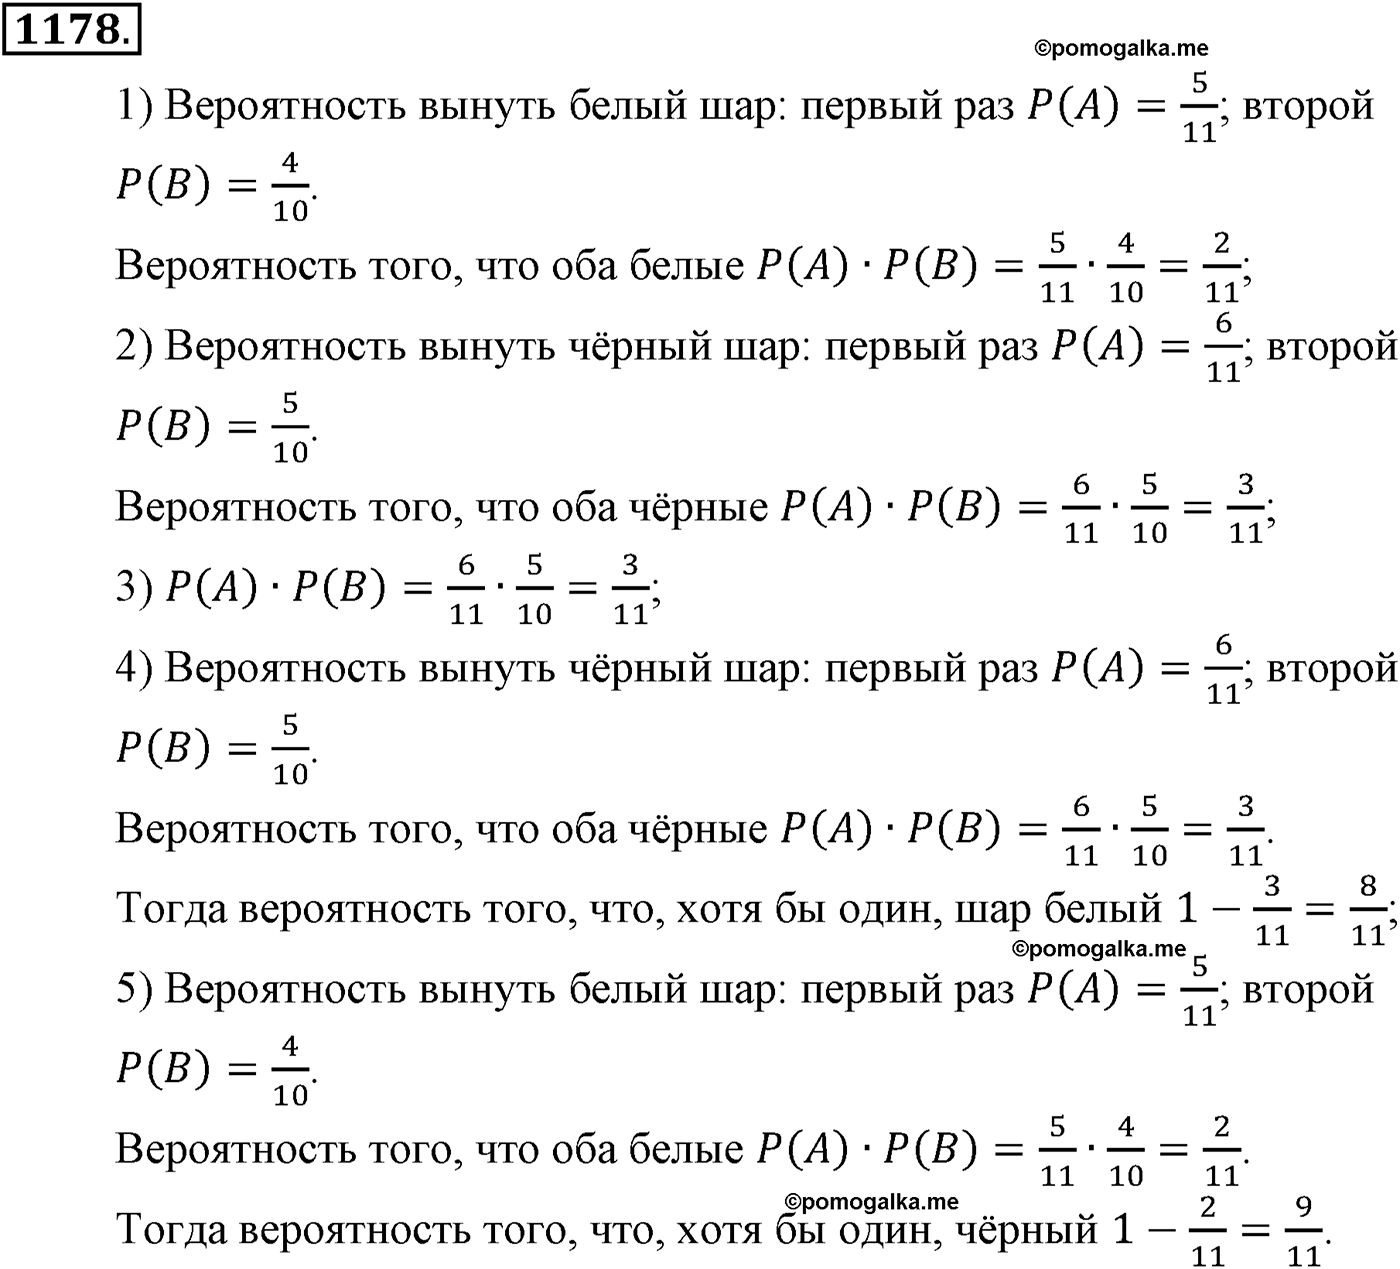 разбор задачи №1178 по алгебре за 10-11 класс из учебника Алимова, Колягина